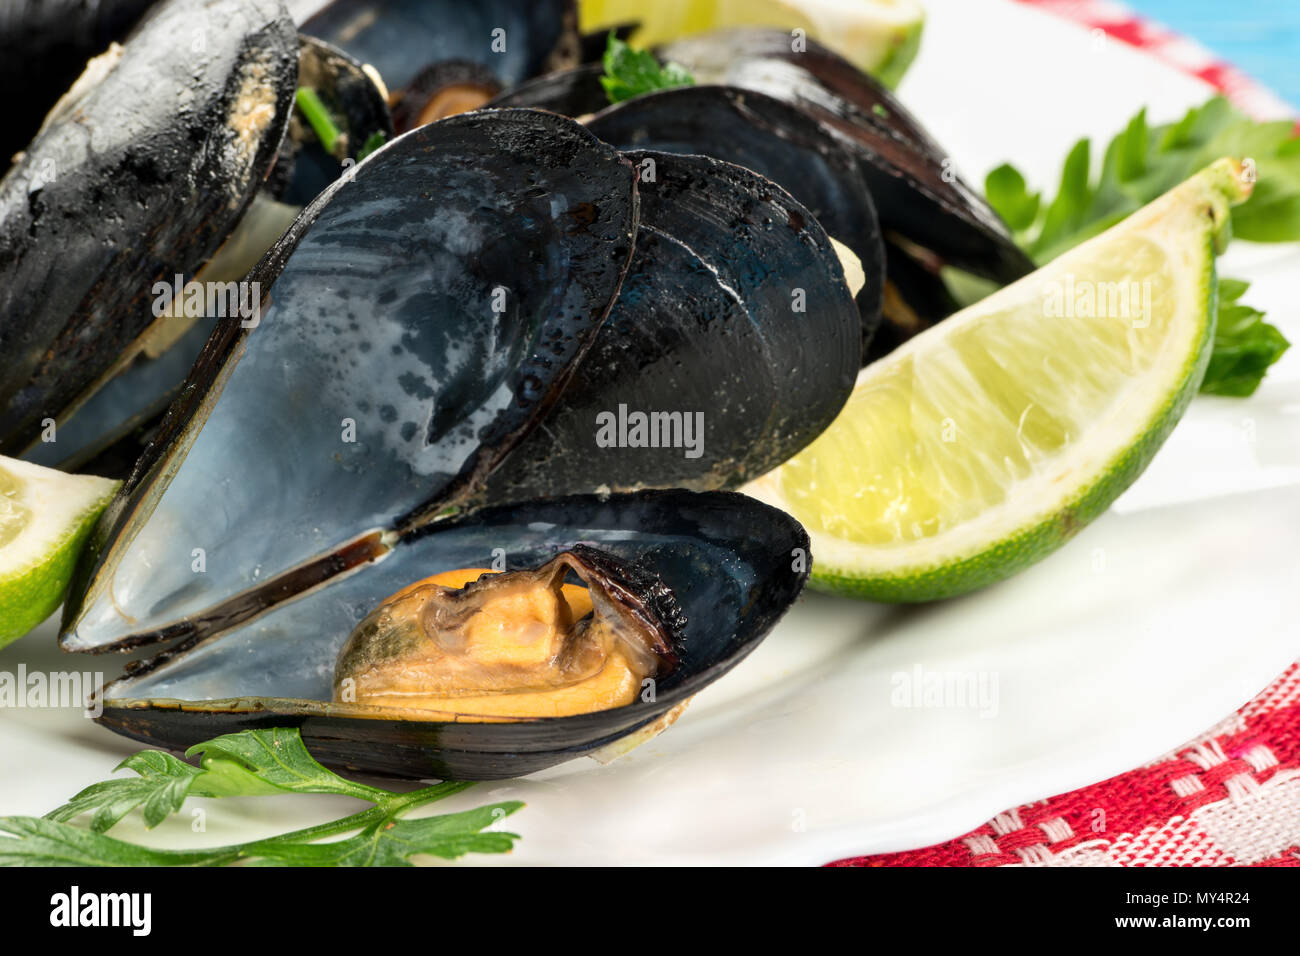 Geöffnete Muscheln mit Zutaten auf einem Teller gekocht, close-up Stockfoto